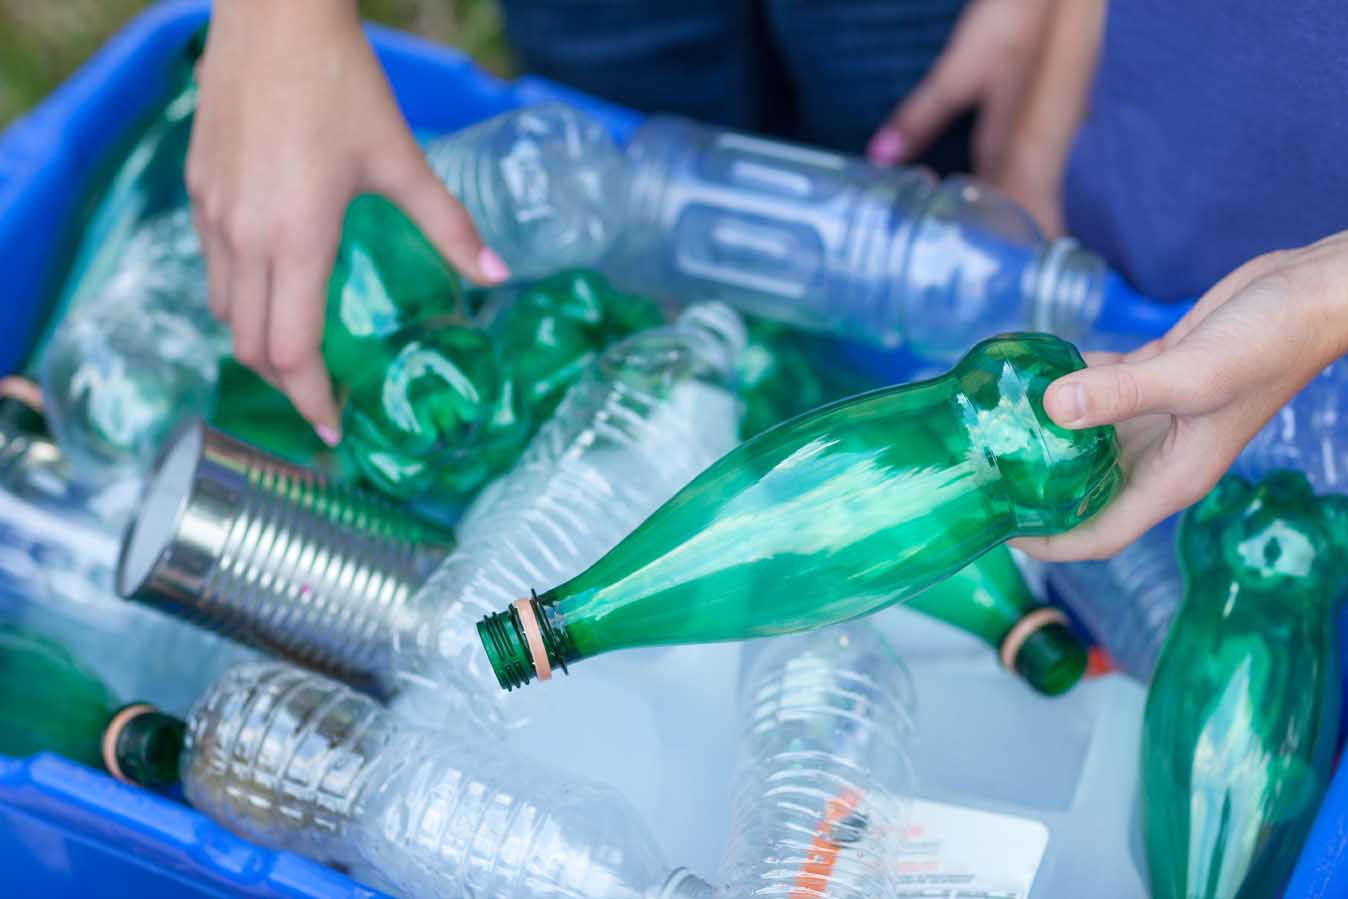 plastic bottles